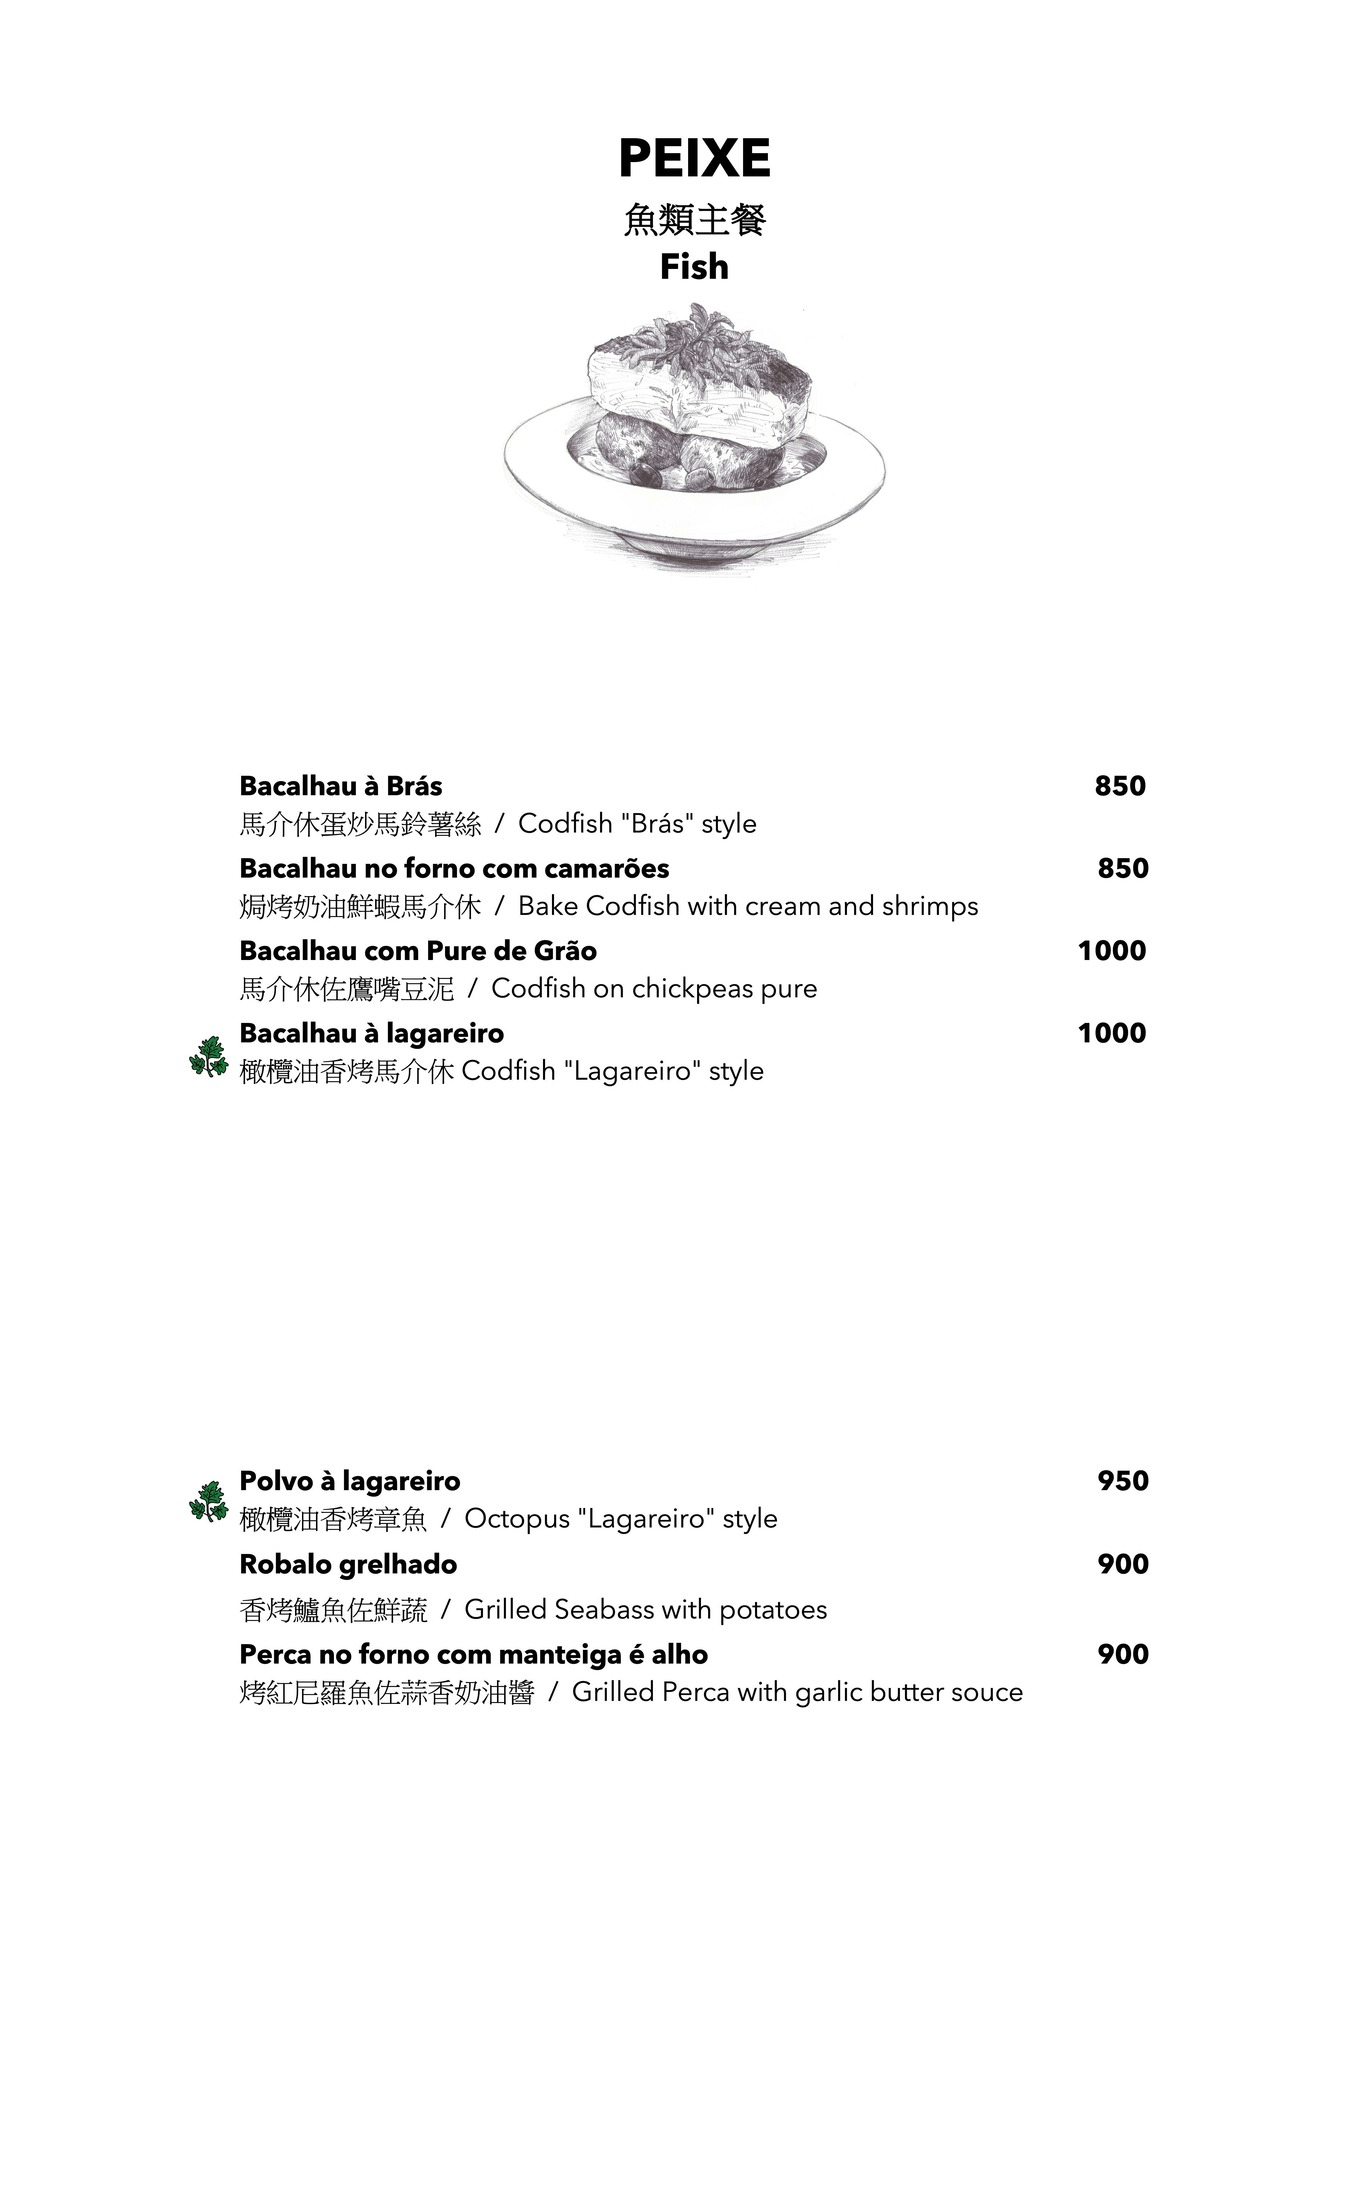 TUGA 葡萄牙餐廳 最新版菜單